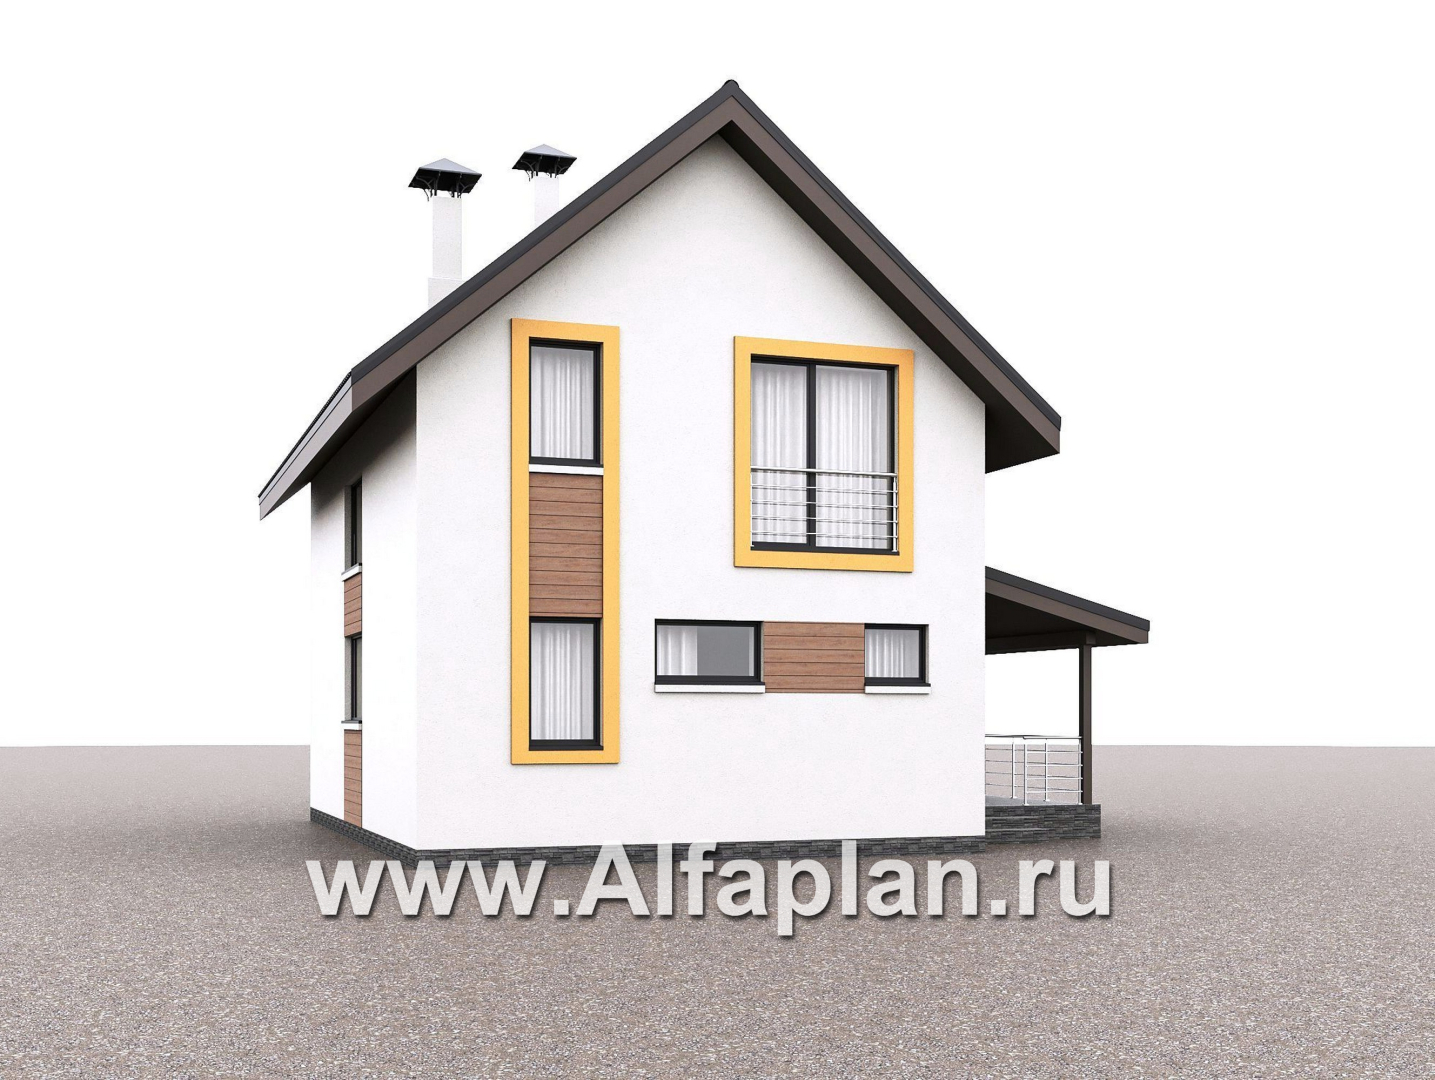 Проекты домов Альфаплан - "Викинг" - проект дома, 2 этажа, с сауной и с террасой сбоку, в скандинавском стиле - дополнительное изображение №1